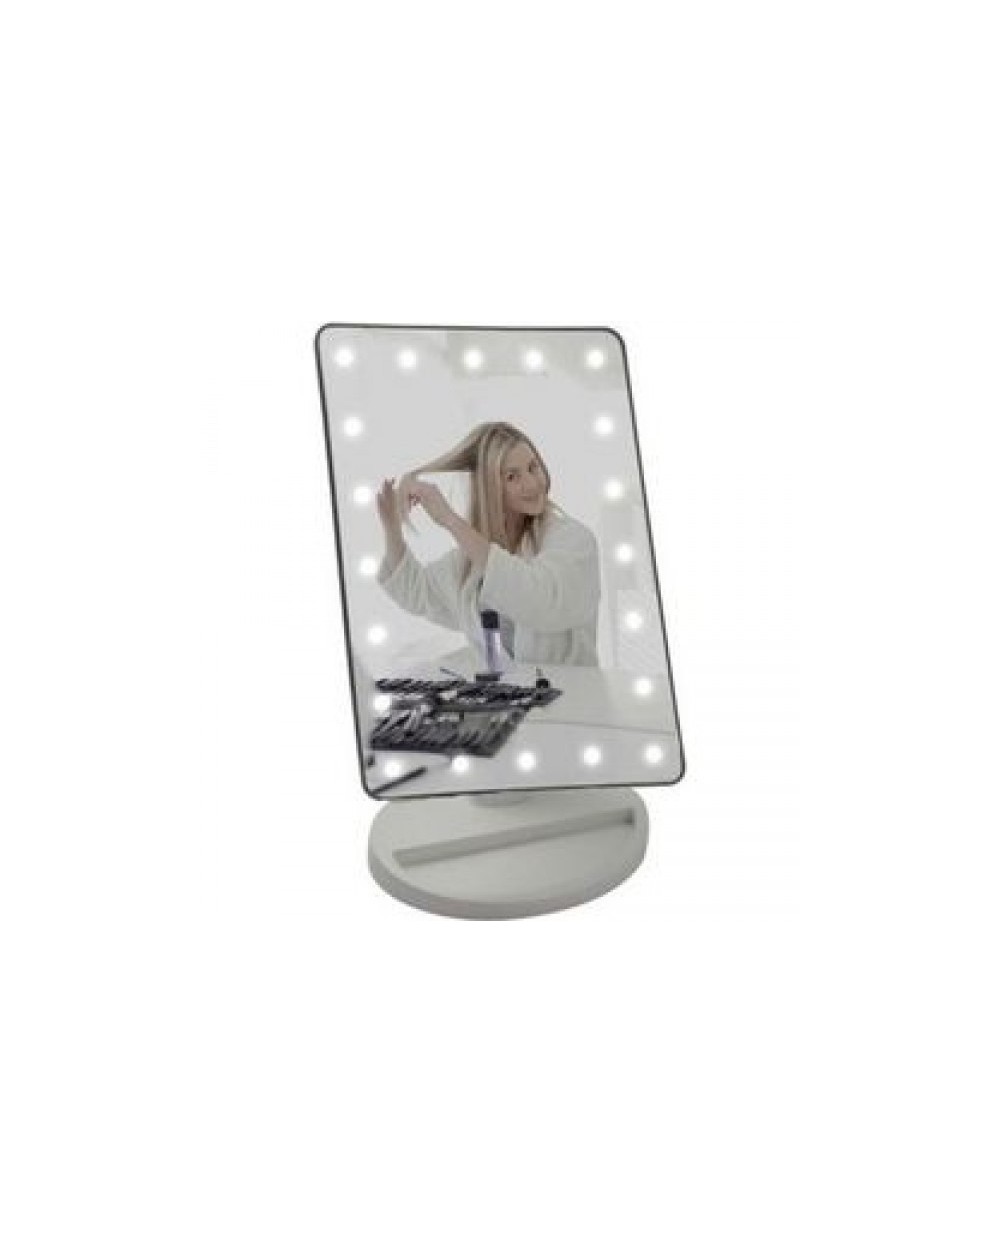 Καθρέφτης μακιγιάζ - Καθρέπτης με 22 φώτα Led - Led mirror